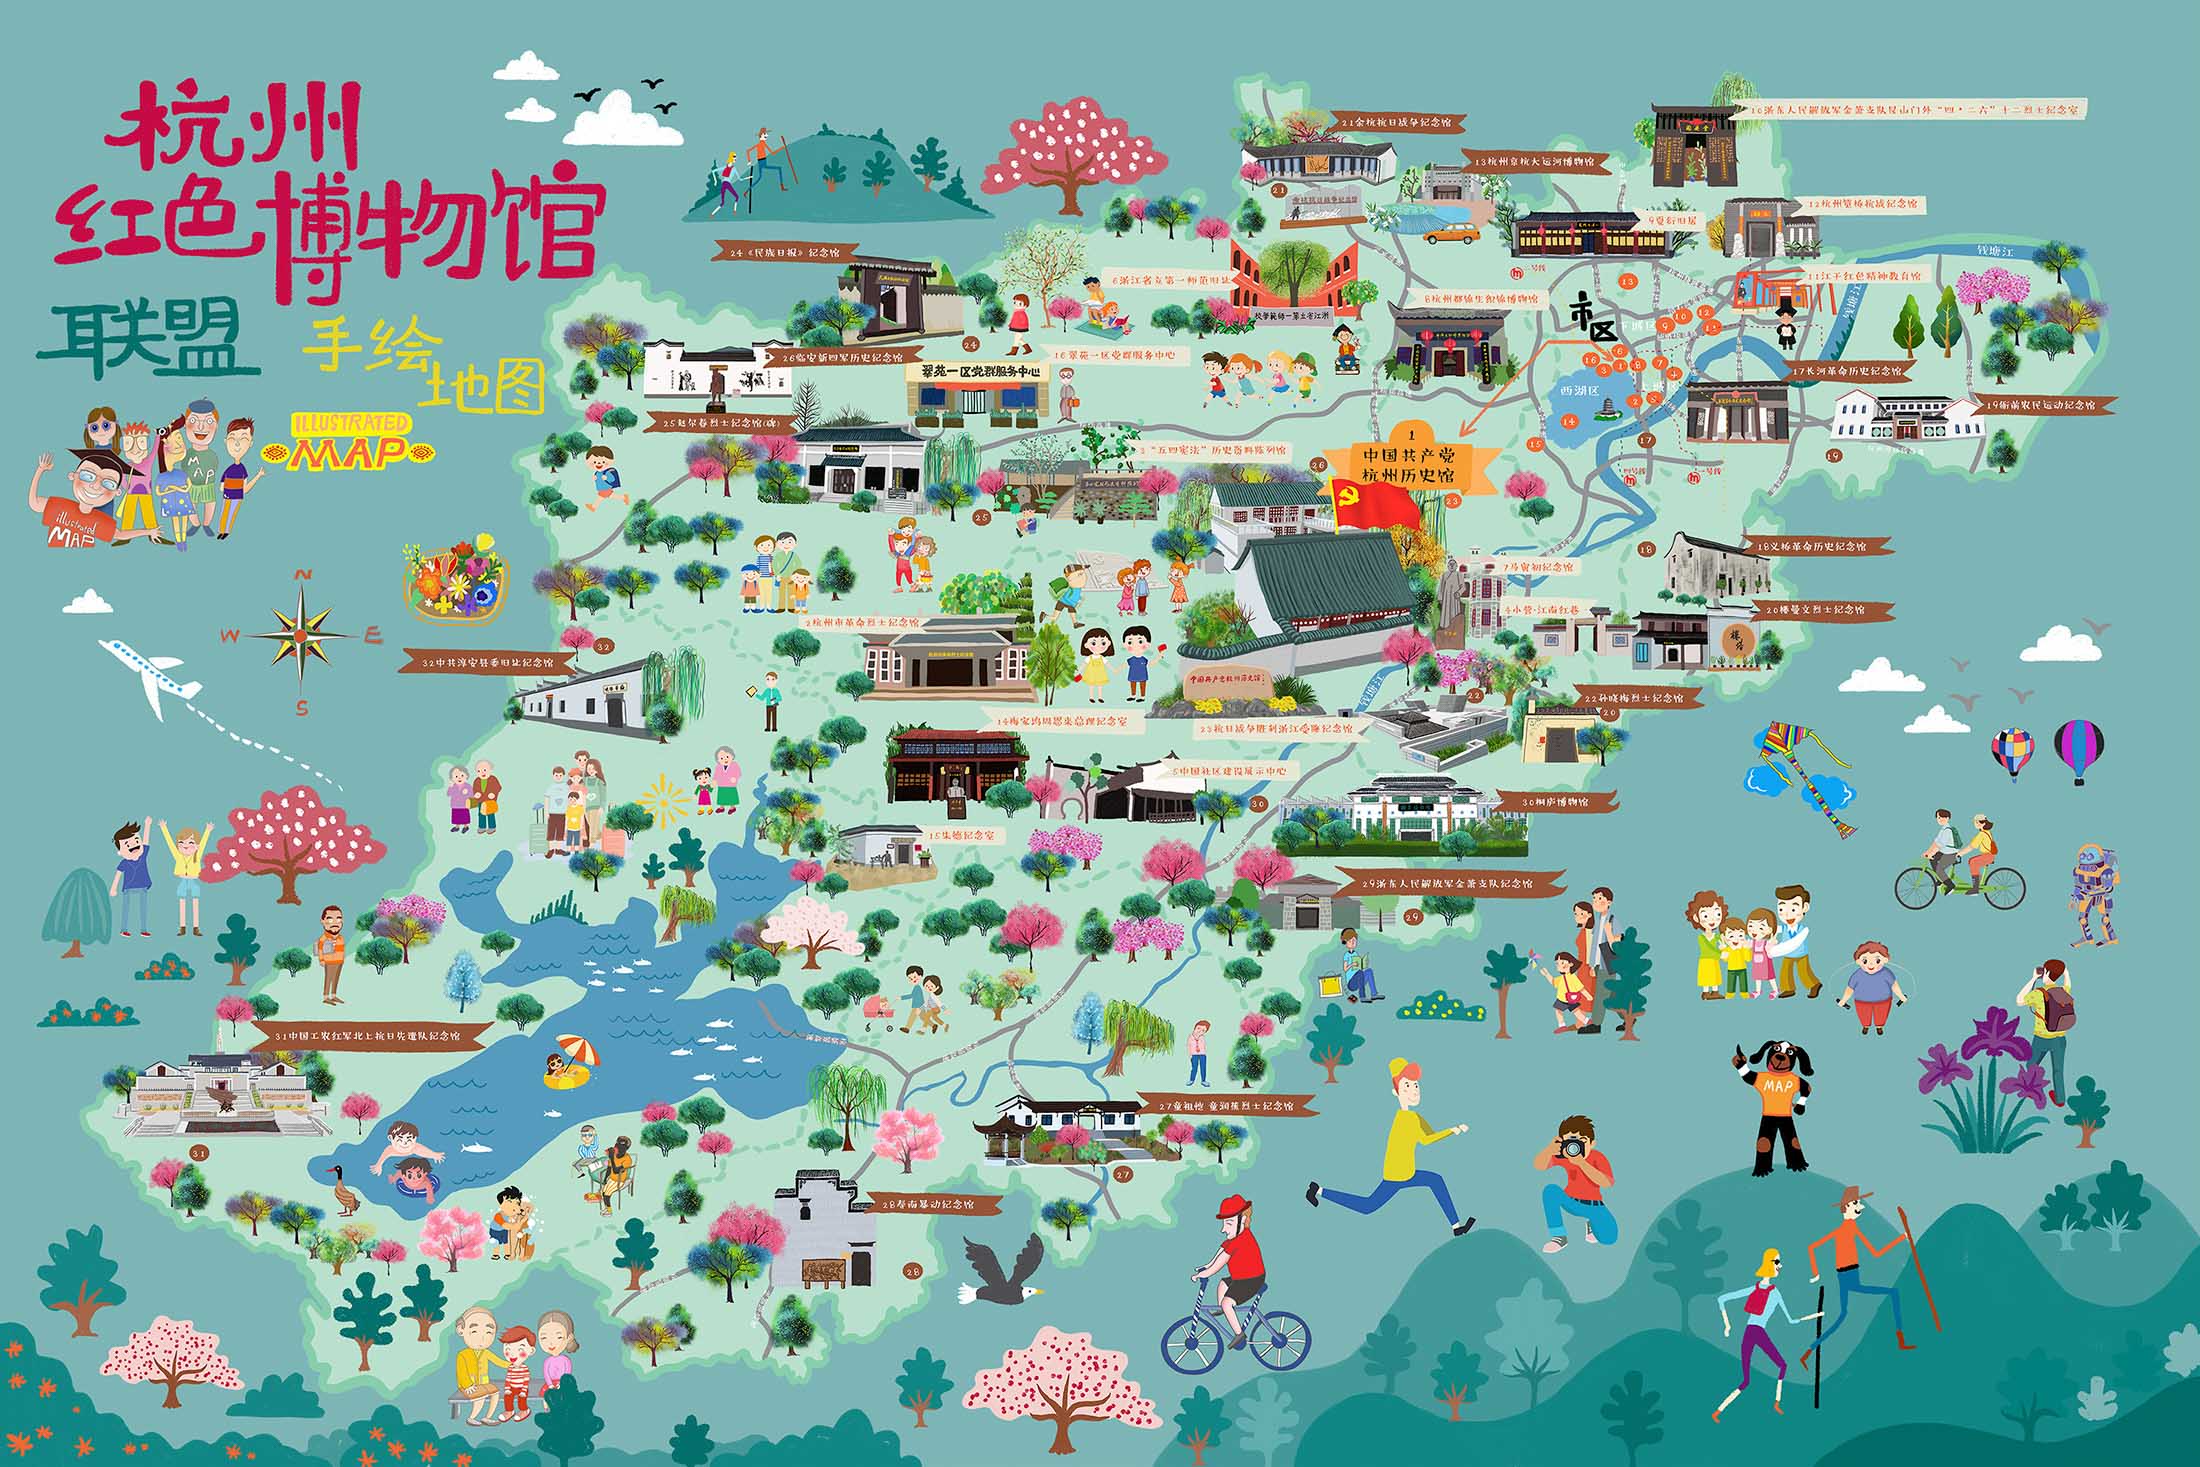 渭滨手绘地图与科技的完美结合 